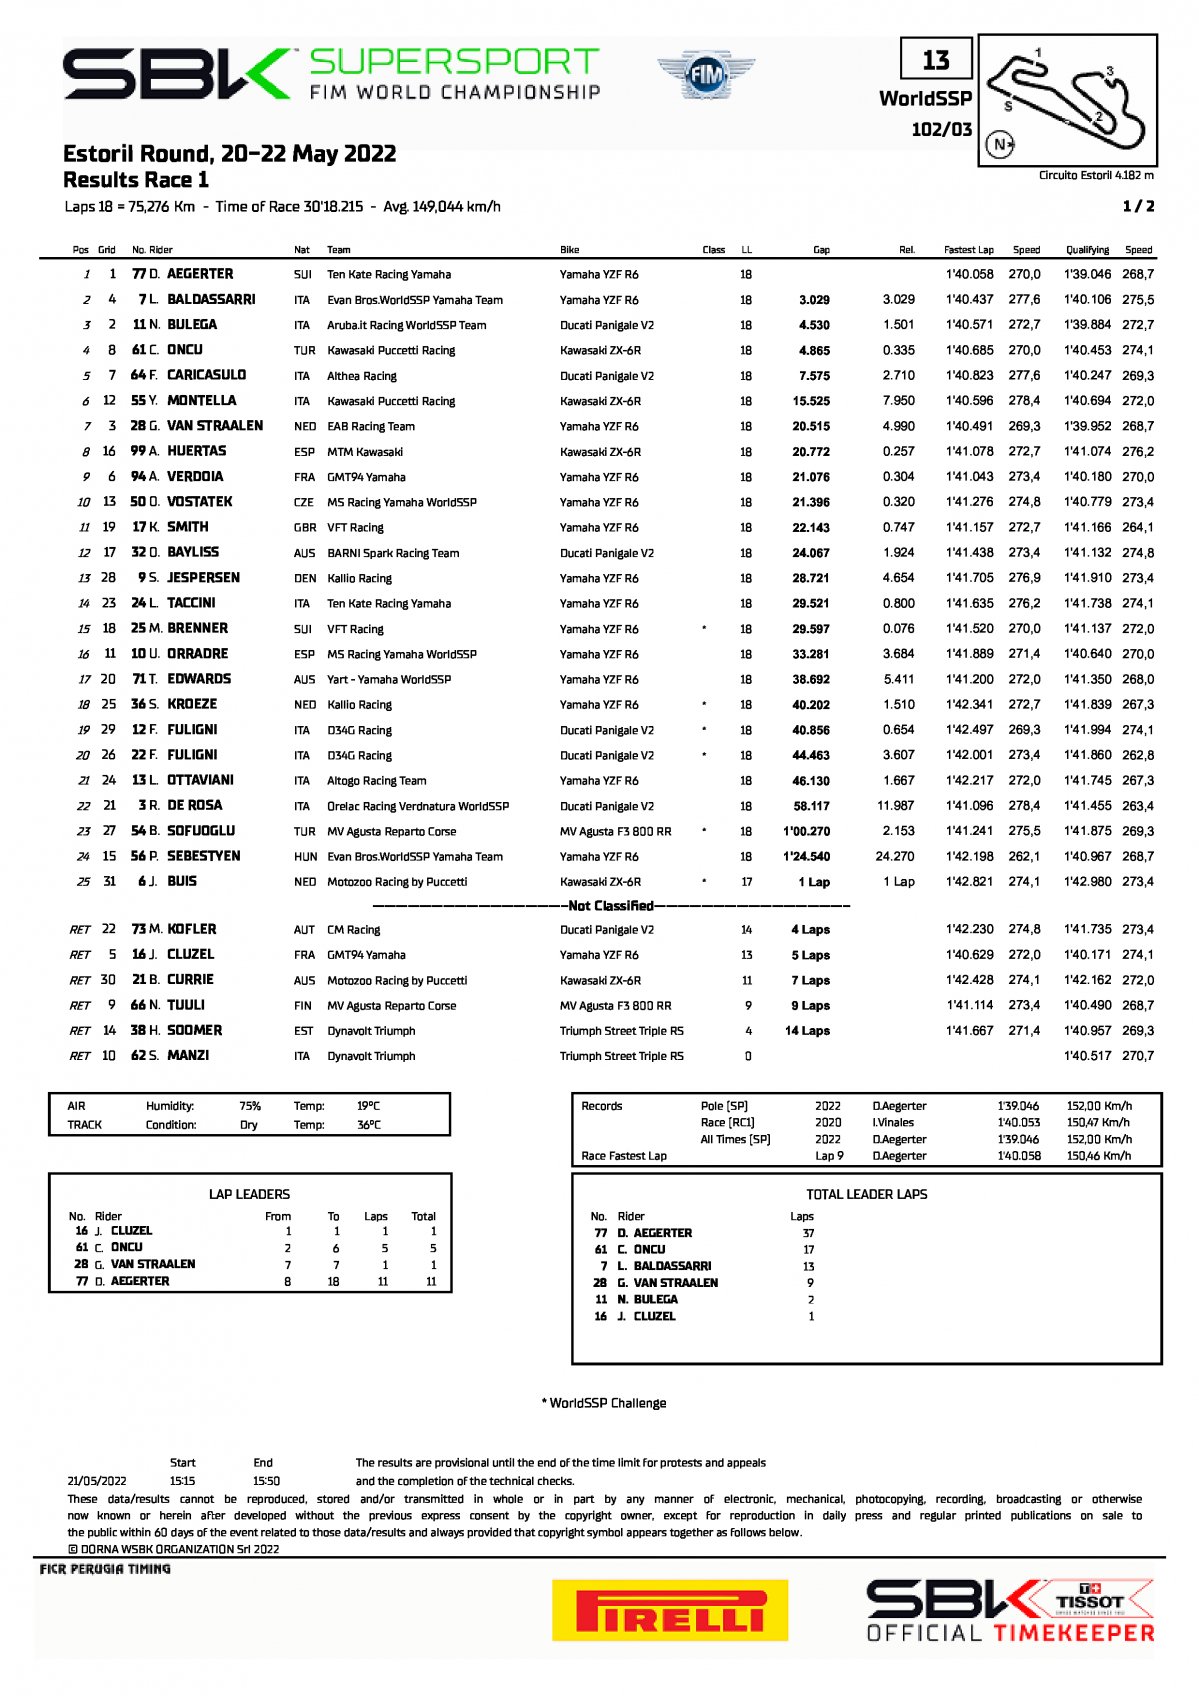 Результаты 1-й гонки World Supersport, EstorilWorldSBK, 21/05/2022